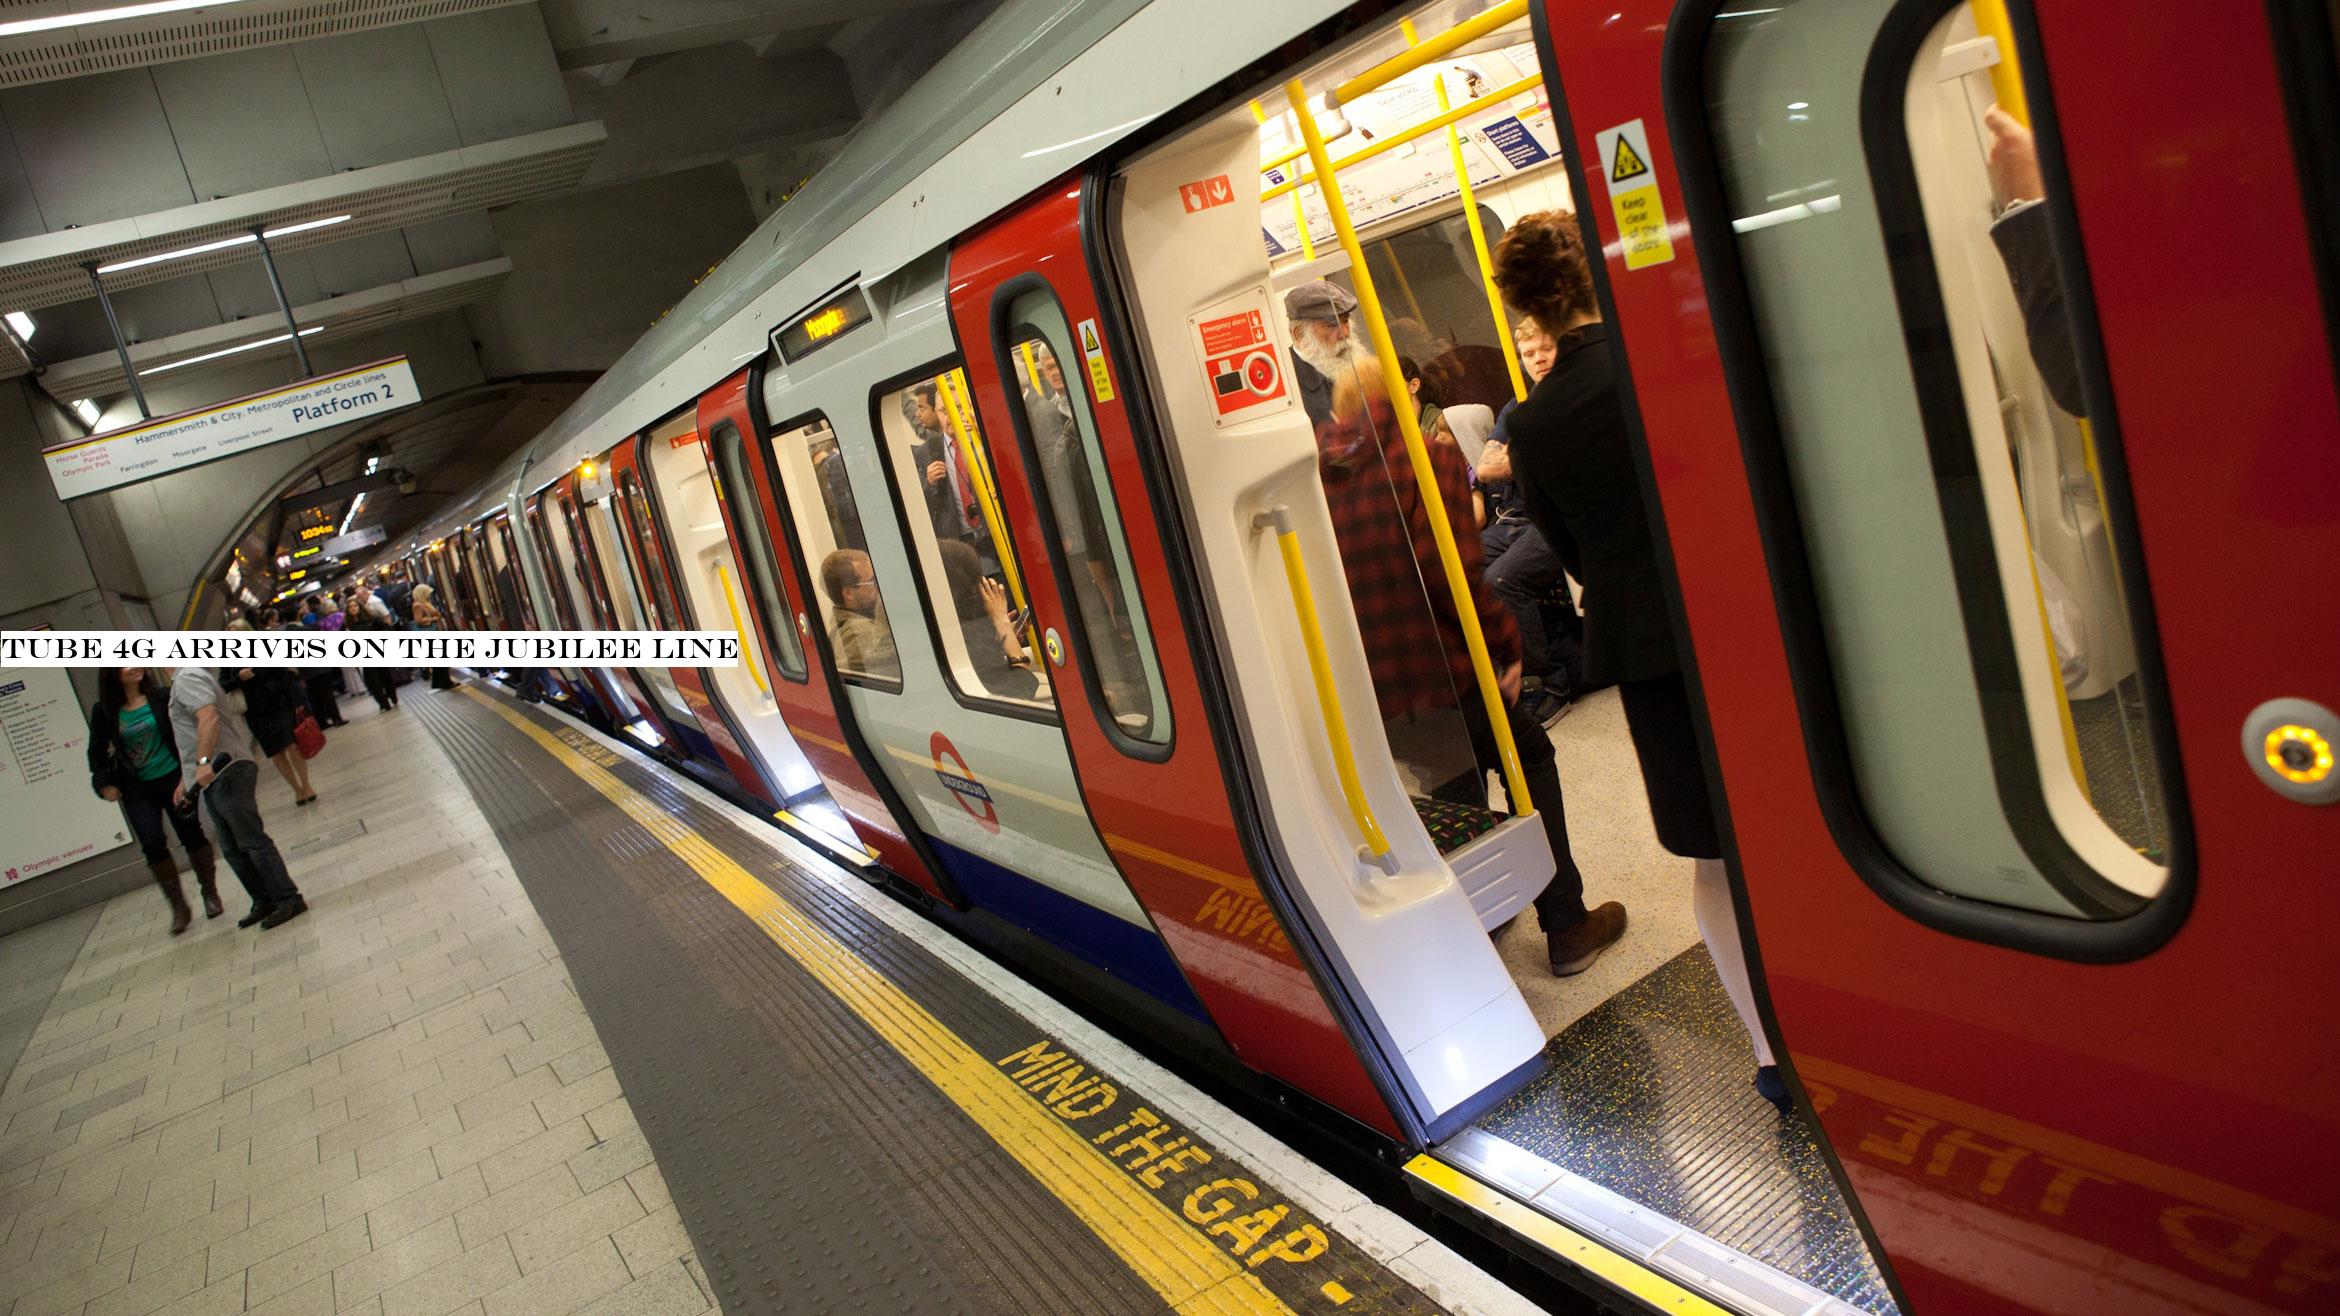 Tube 4G arrives on the Jubilee Line